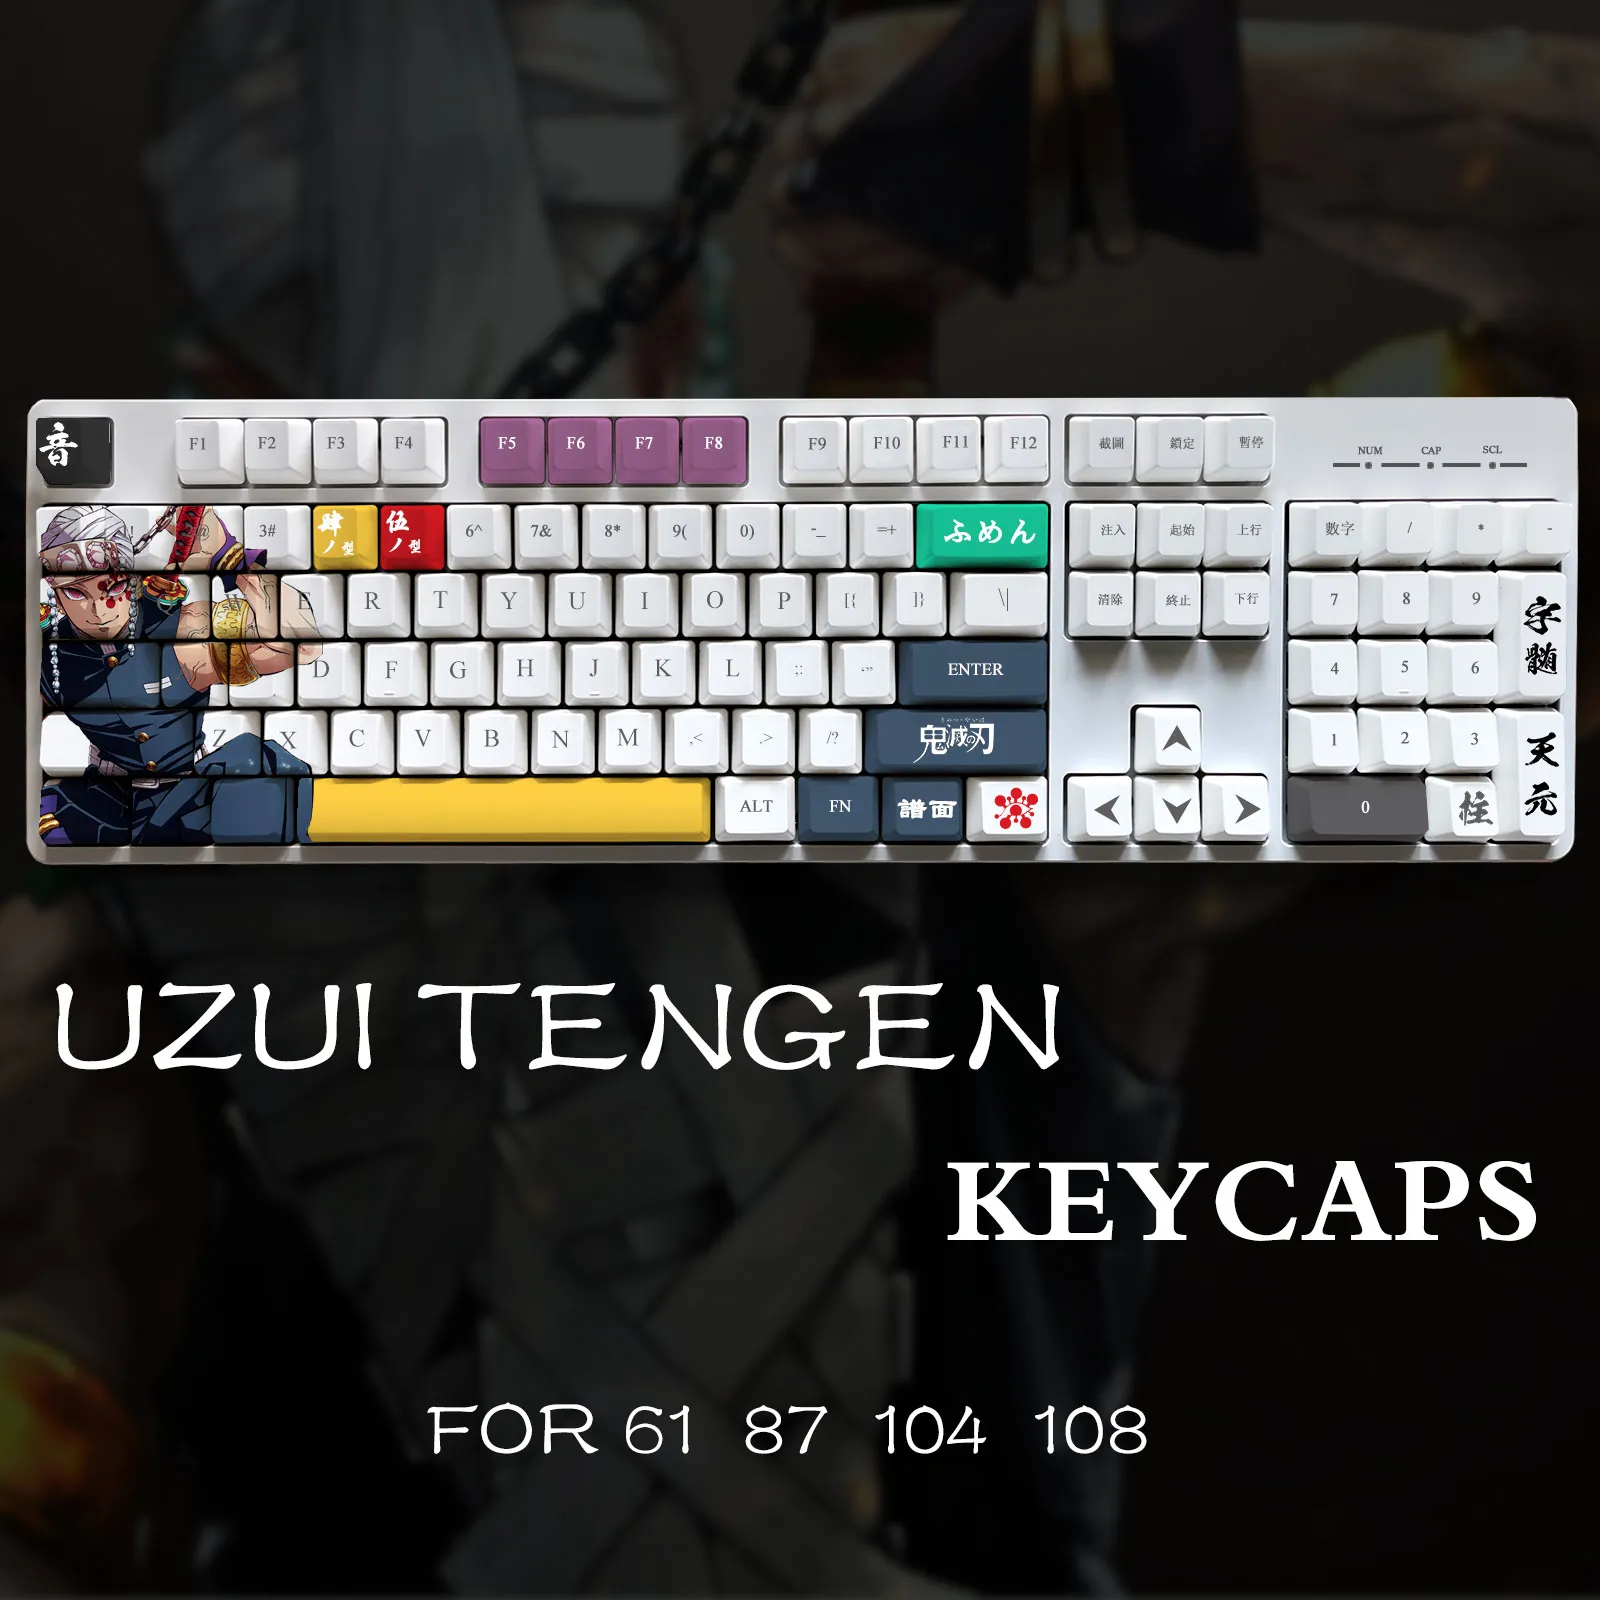 Iblis avcısı Uzui Tengen tema Pbt malzeme Keycaps 108 için ayarlanan anahtarlar mekanik klavye Oem profil sadece KeyCaps ManyuDou